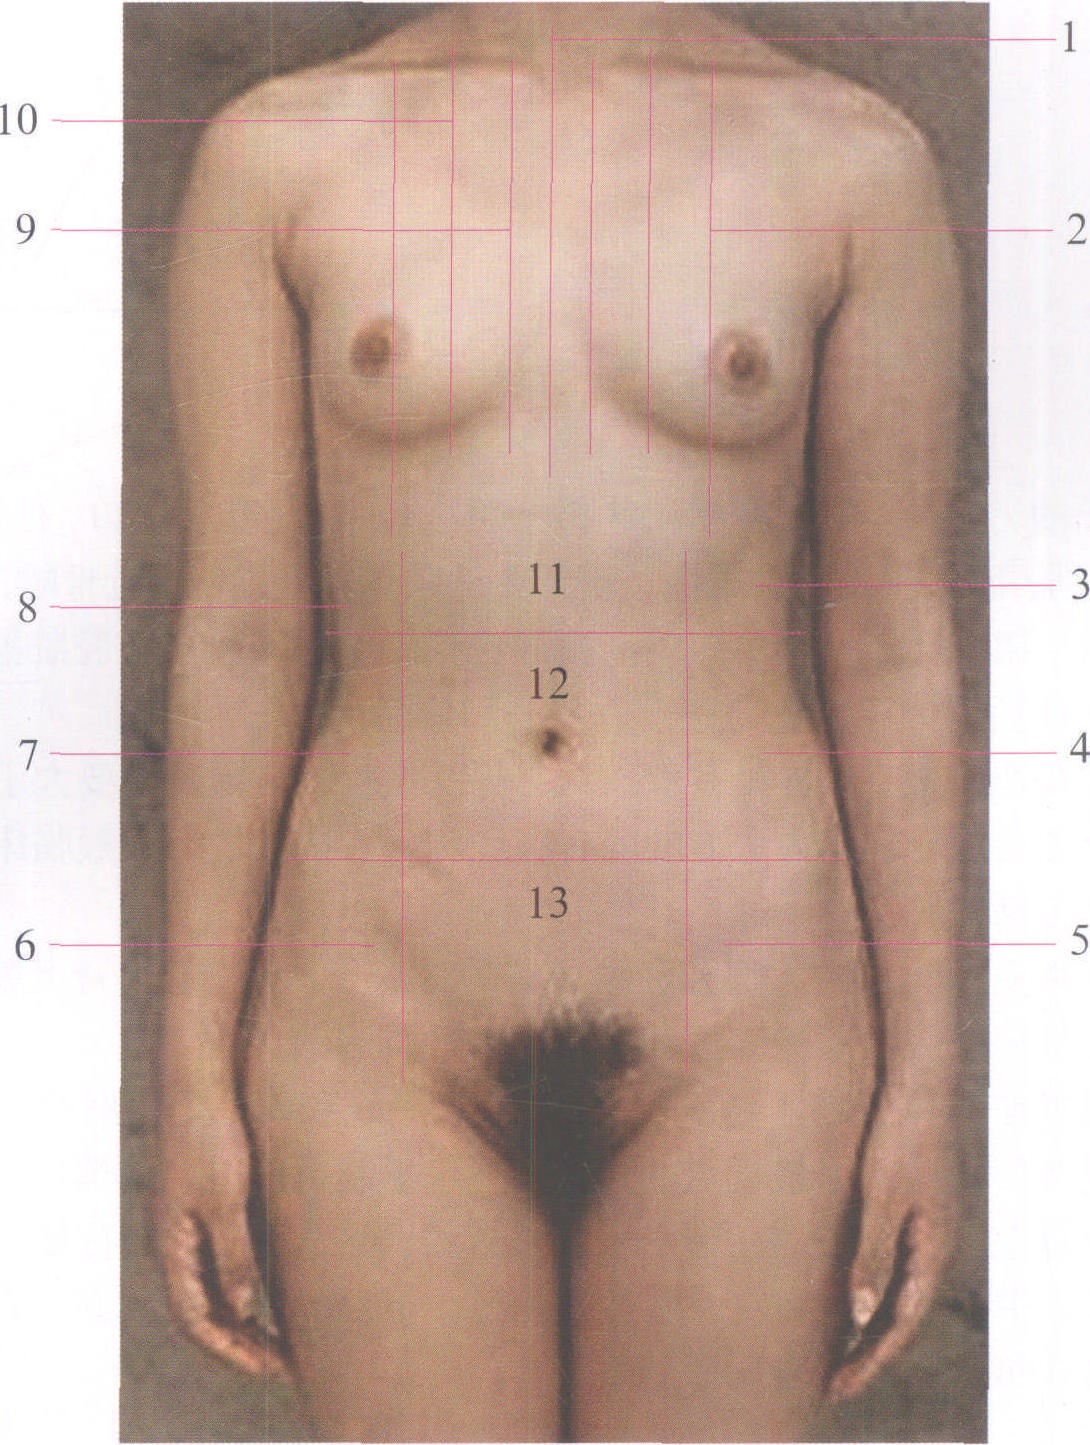 图1-1 胸部标志线和腹部分区